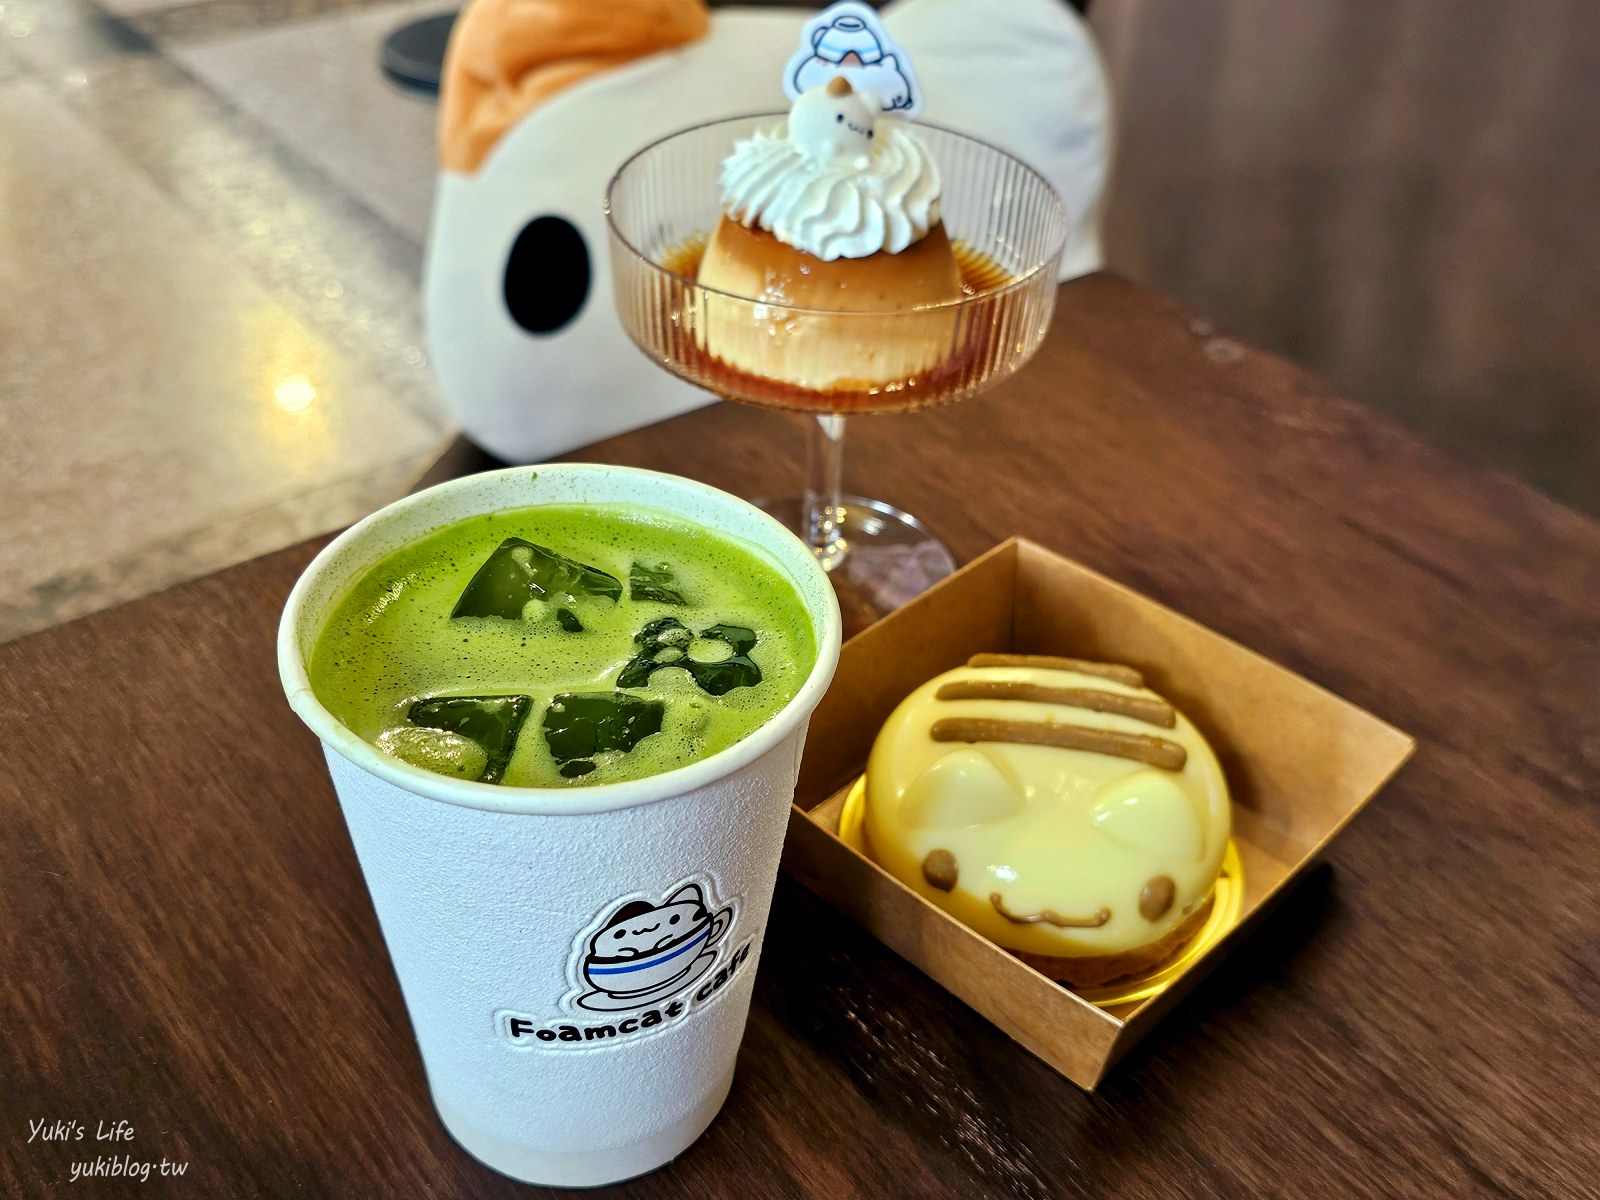 台中咖啡廳|奶泡貓咖啡Foamcat Cafe(臺中驛店)|古蹟裡的奶泡貓雞蛋糕太有梗，可愛爆擊~ - yukiblog.tw